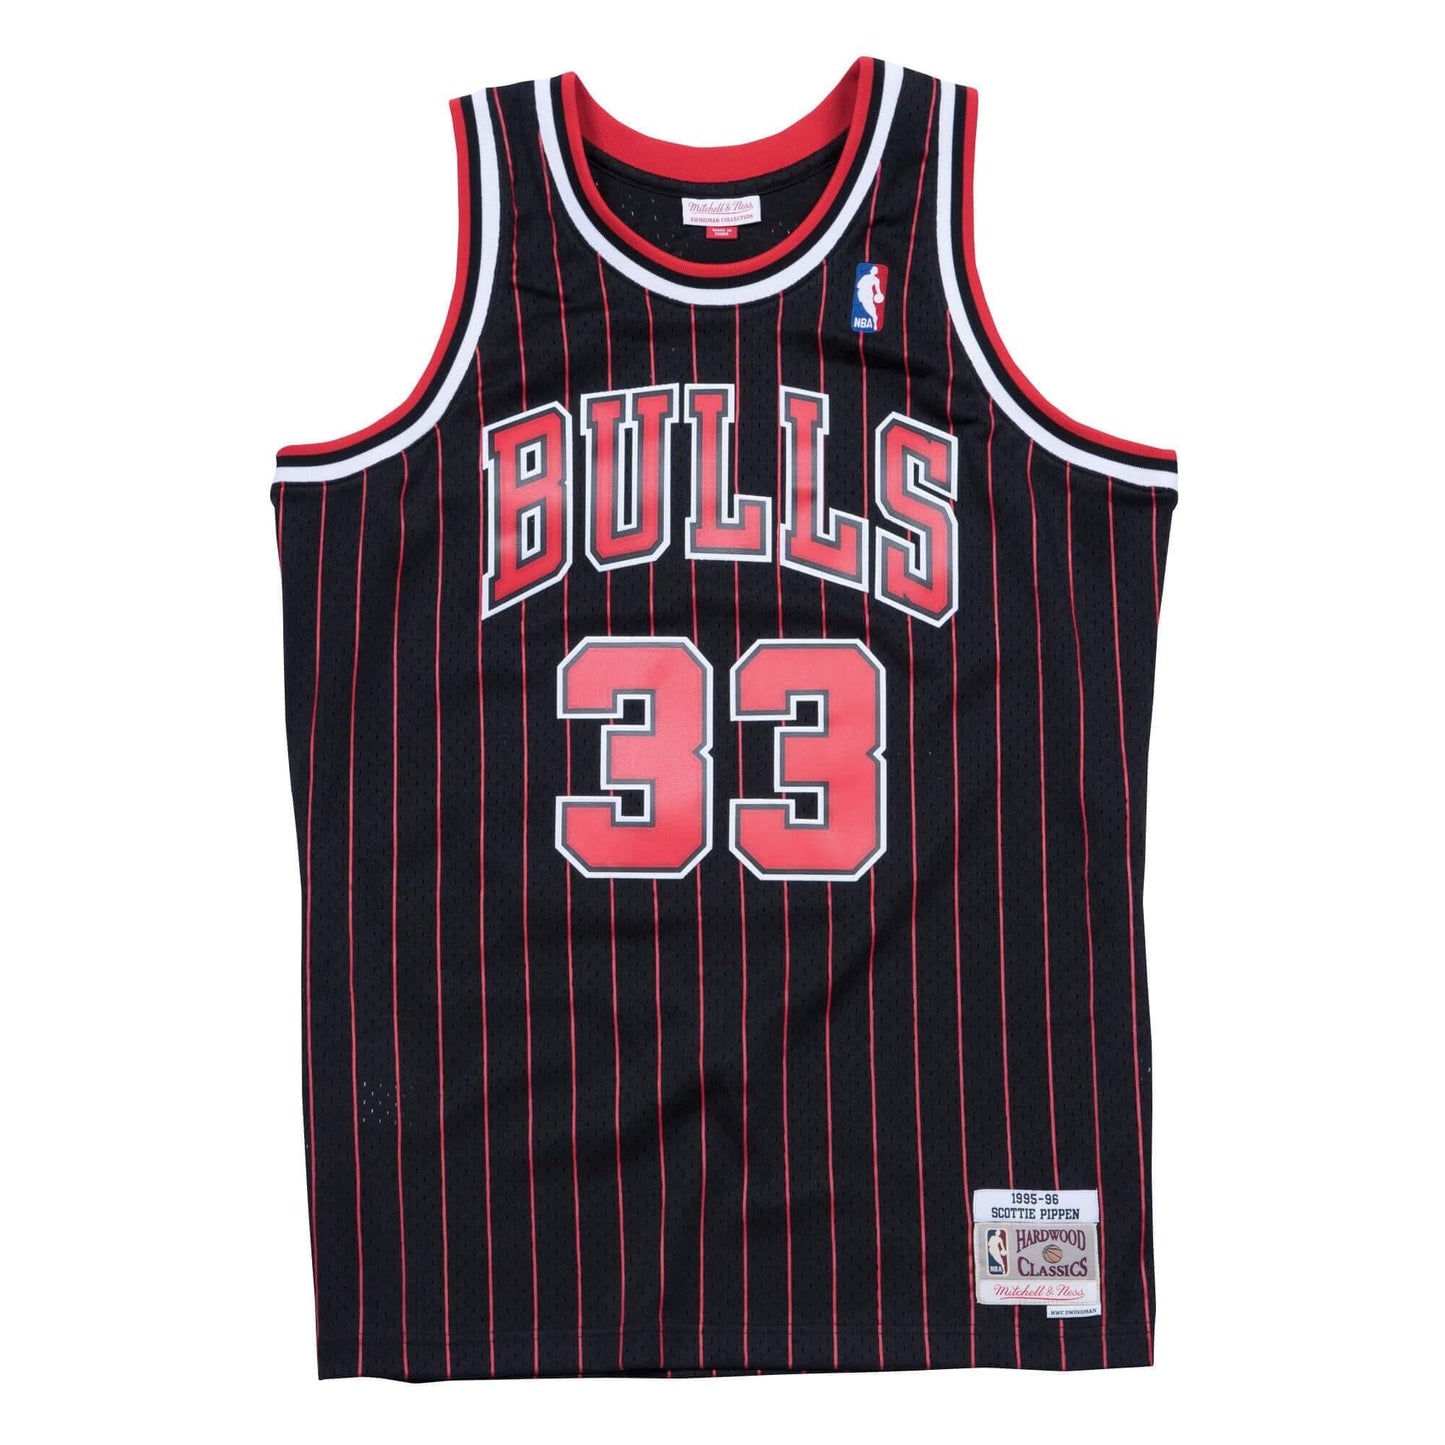 Mitchell & Ness NBA Swingman Alternate Jersey Bulls 95 Scottie Pippen Chicago Bulls Scottie Pippen Black